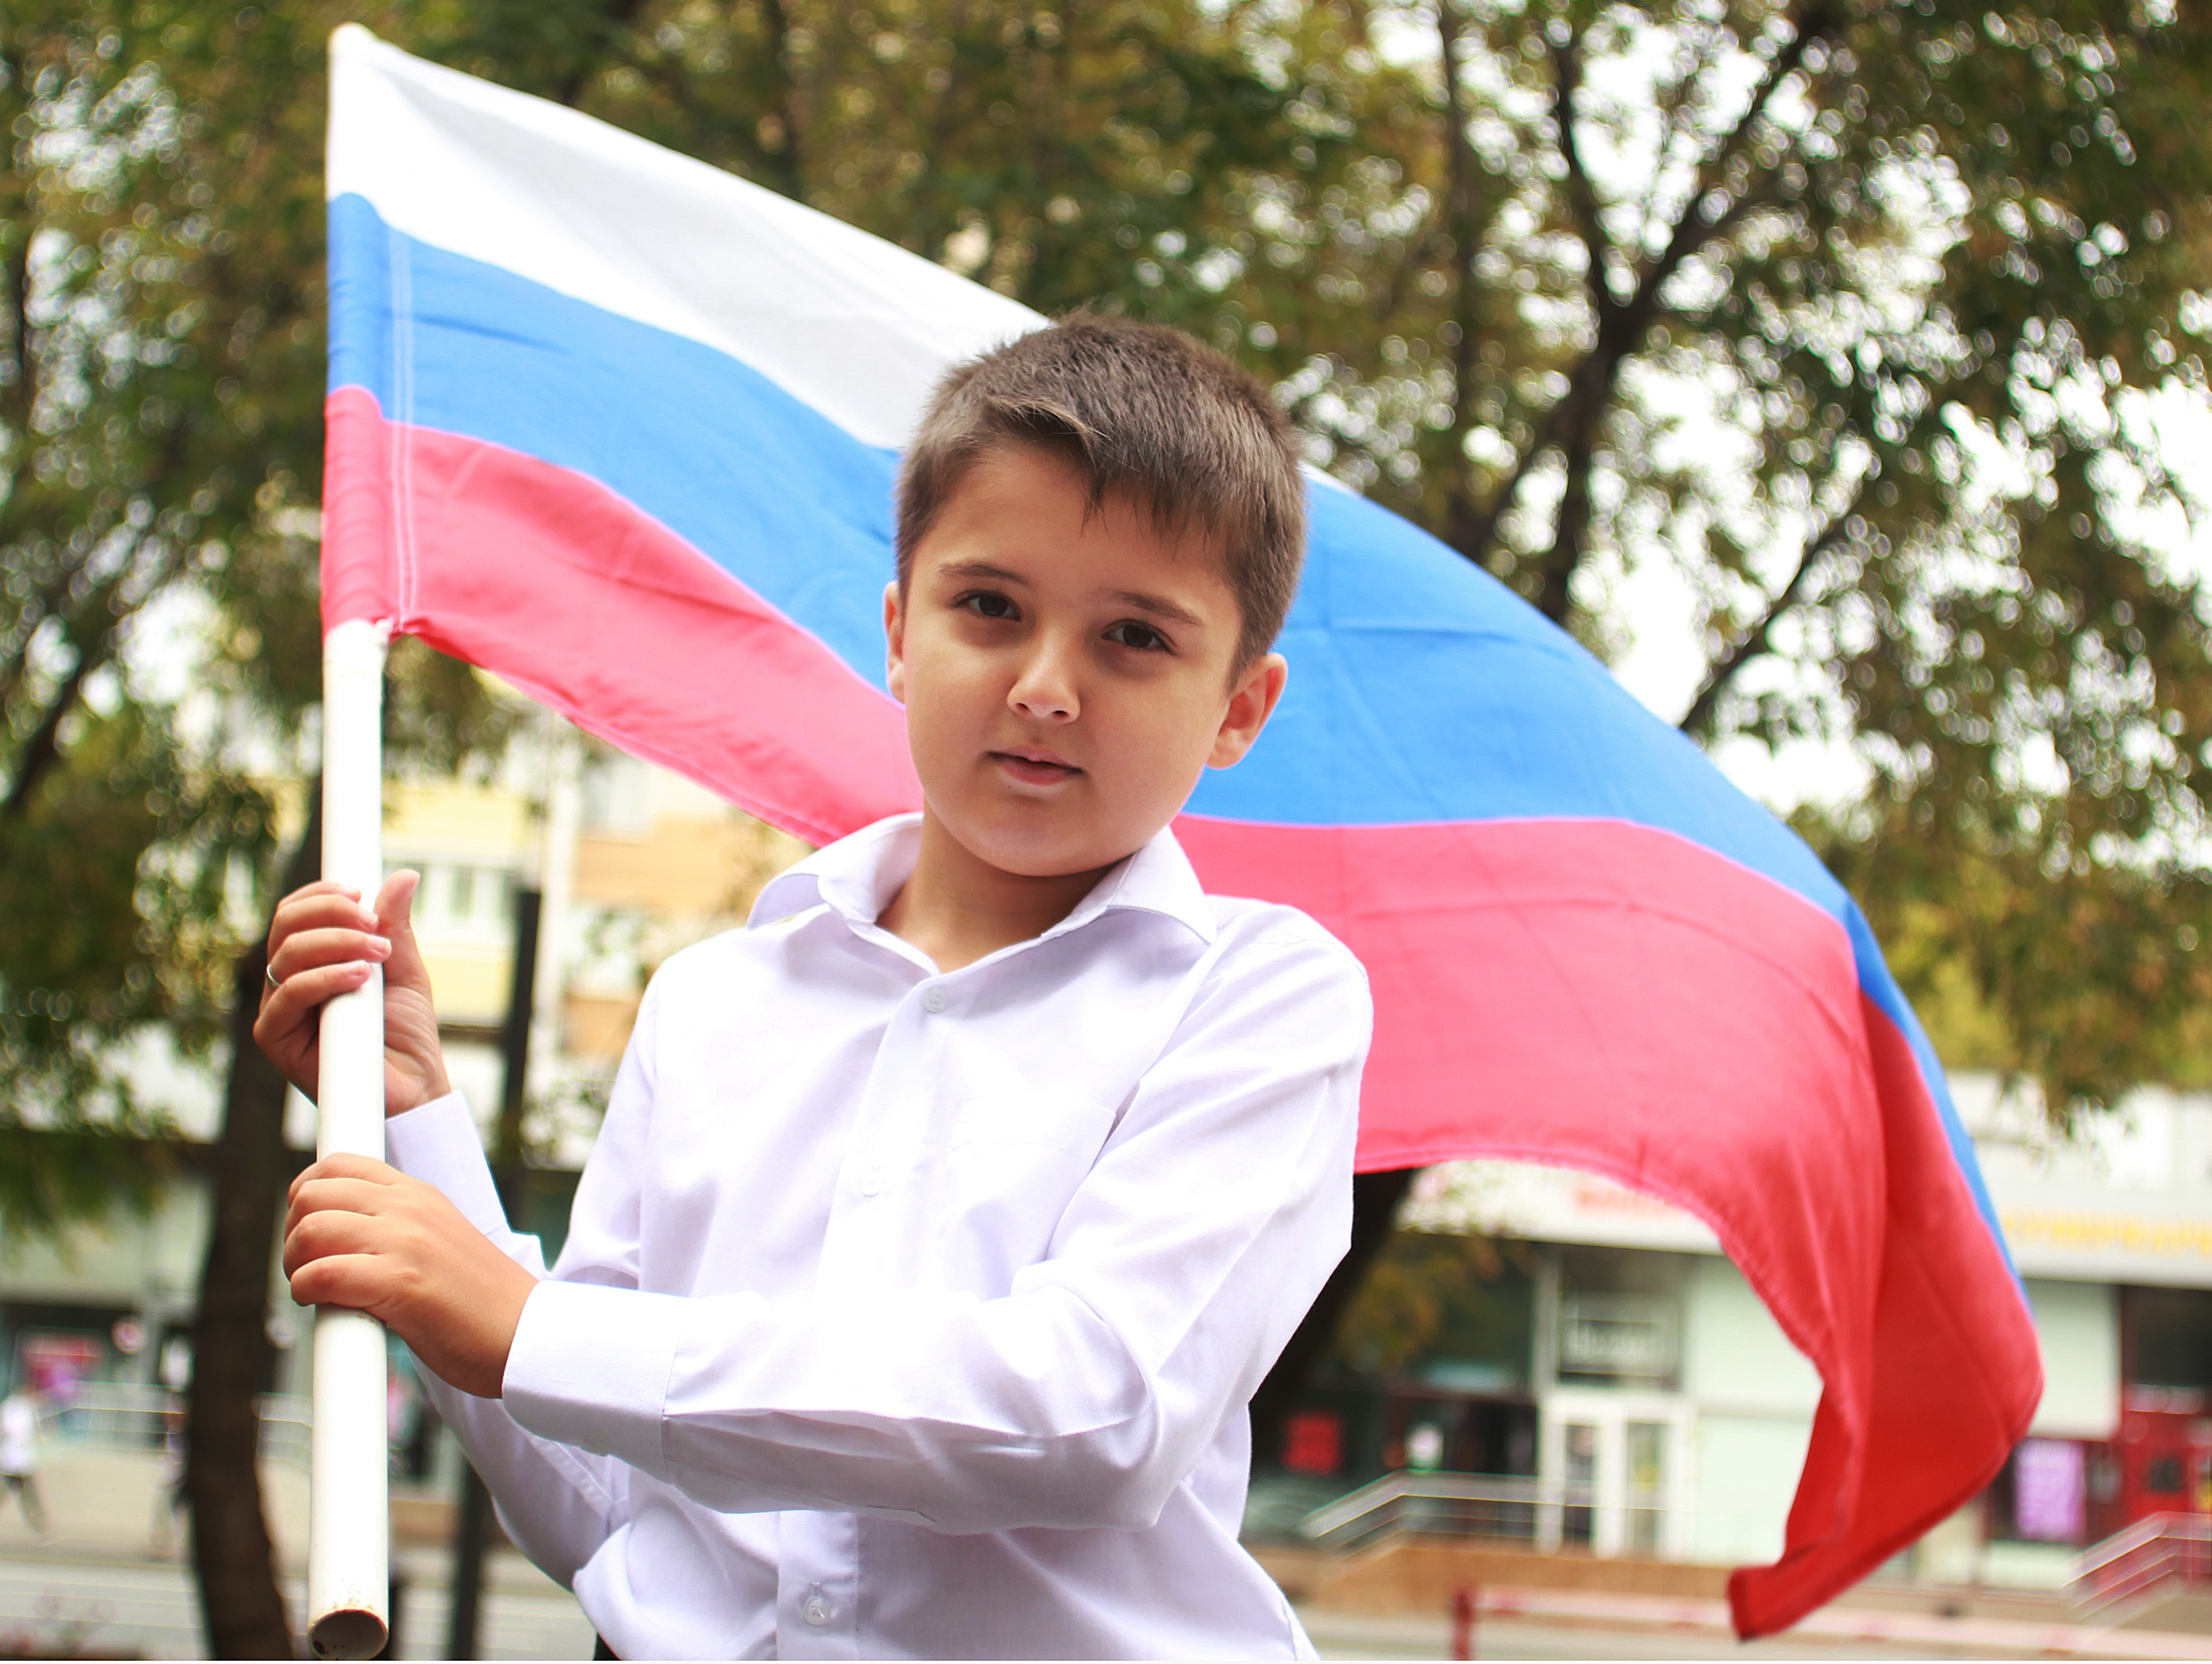 22 августа 2019 года. Восьмилетний Саша Потапов пришел на праздник в Таганский парк с огромным флагом. Фото: Наталия Нечаева